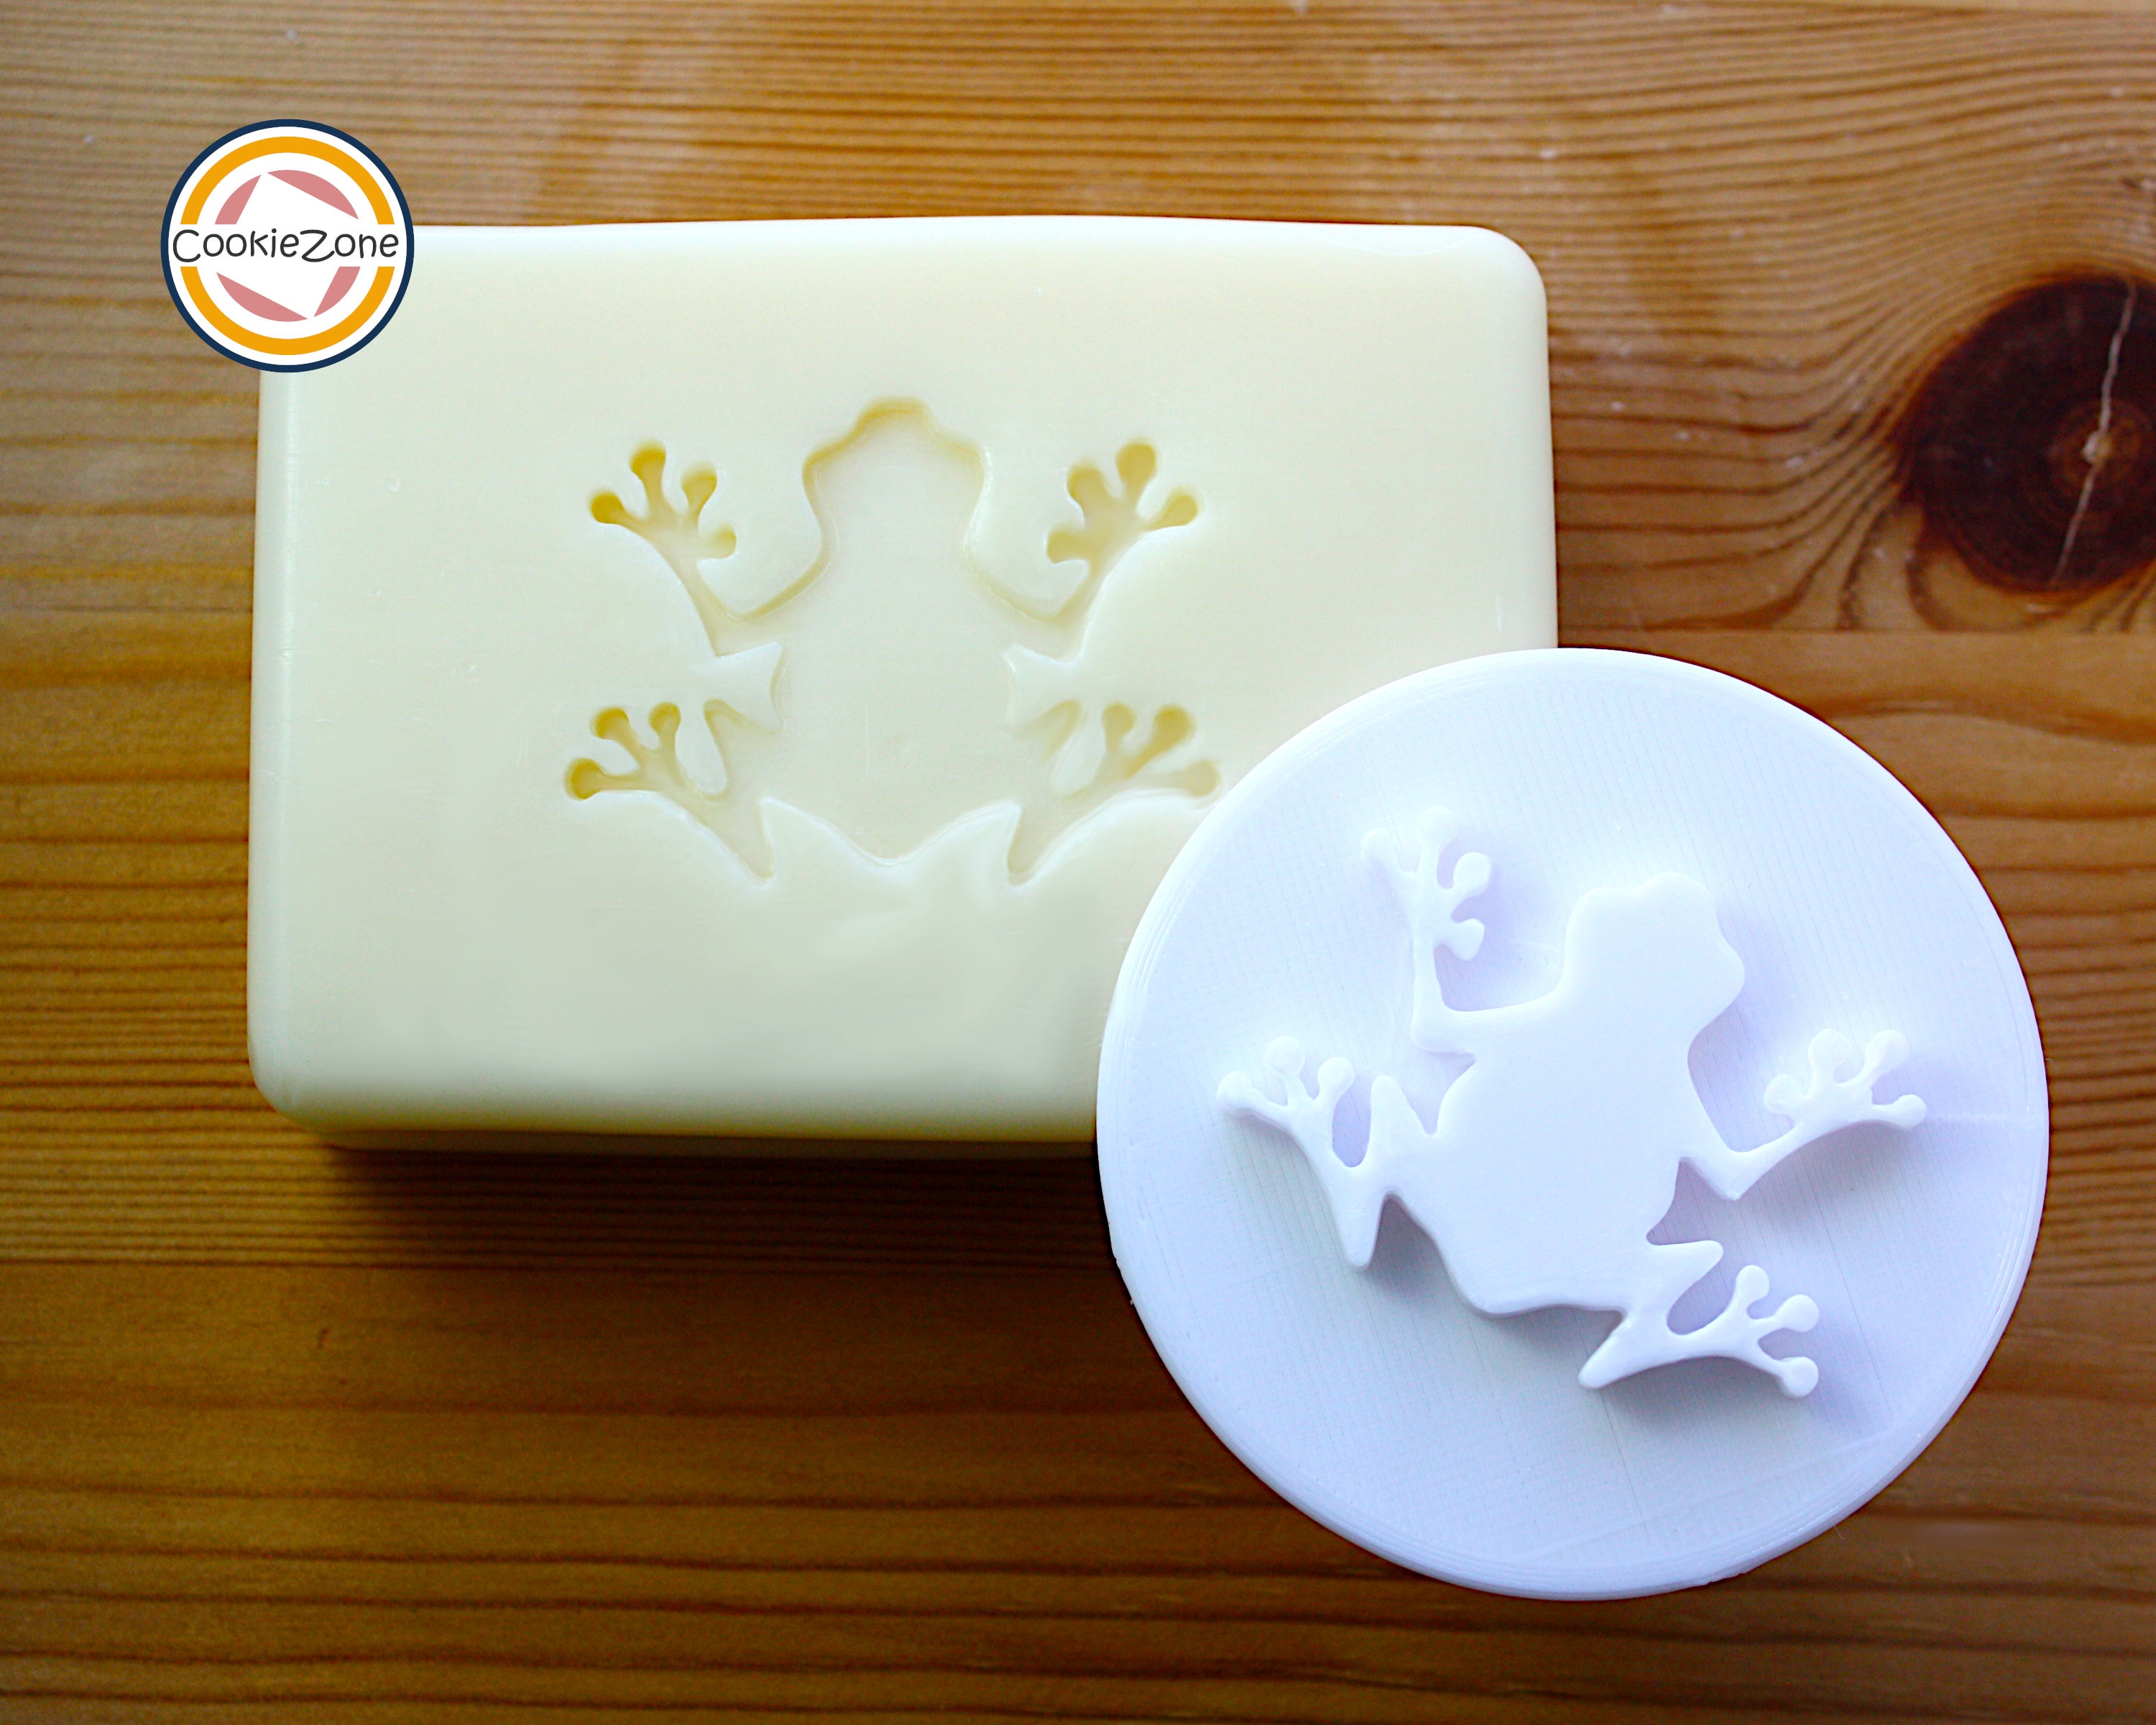 Custom Soap Logo Stamp, Custom Soap Stamp, Custom Soap Bar Stamp, Handmade  Soap Supplies, Soap Stamping Logo, Artwork Soap Stamp, DIY Soap 